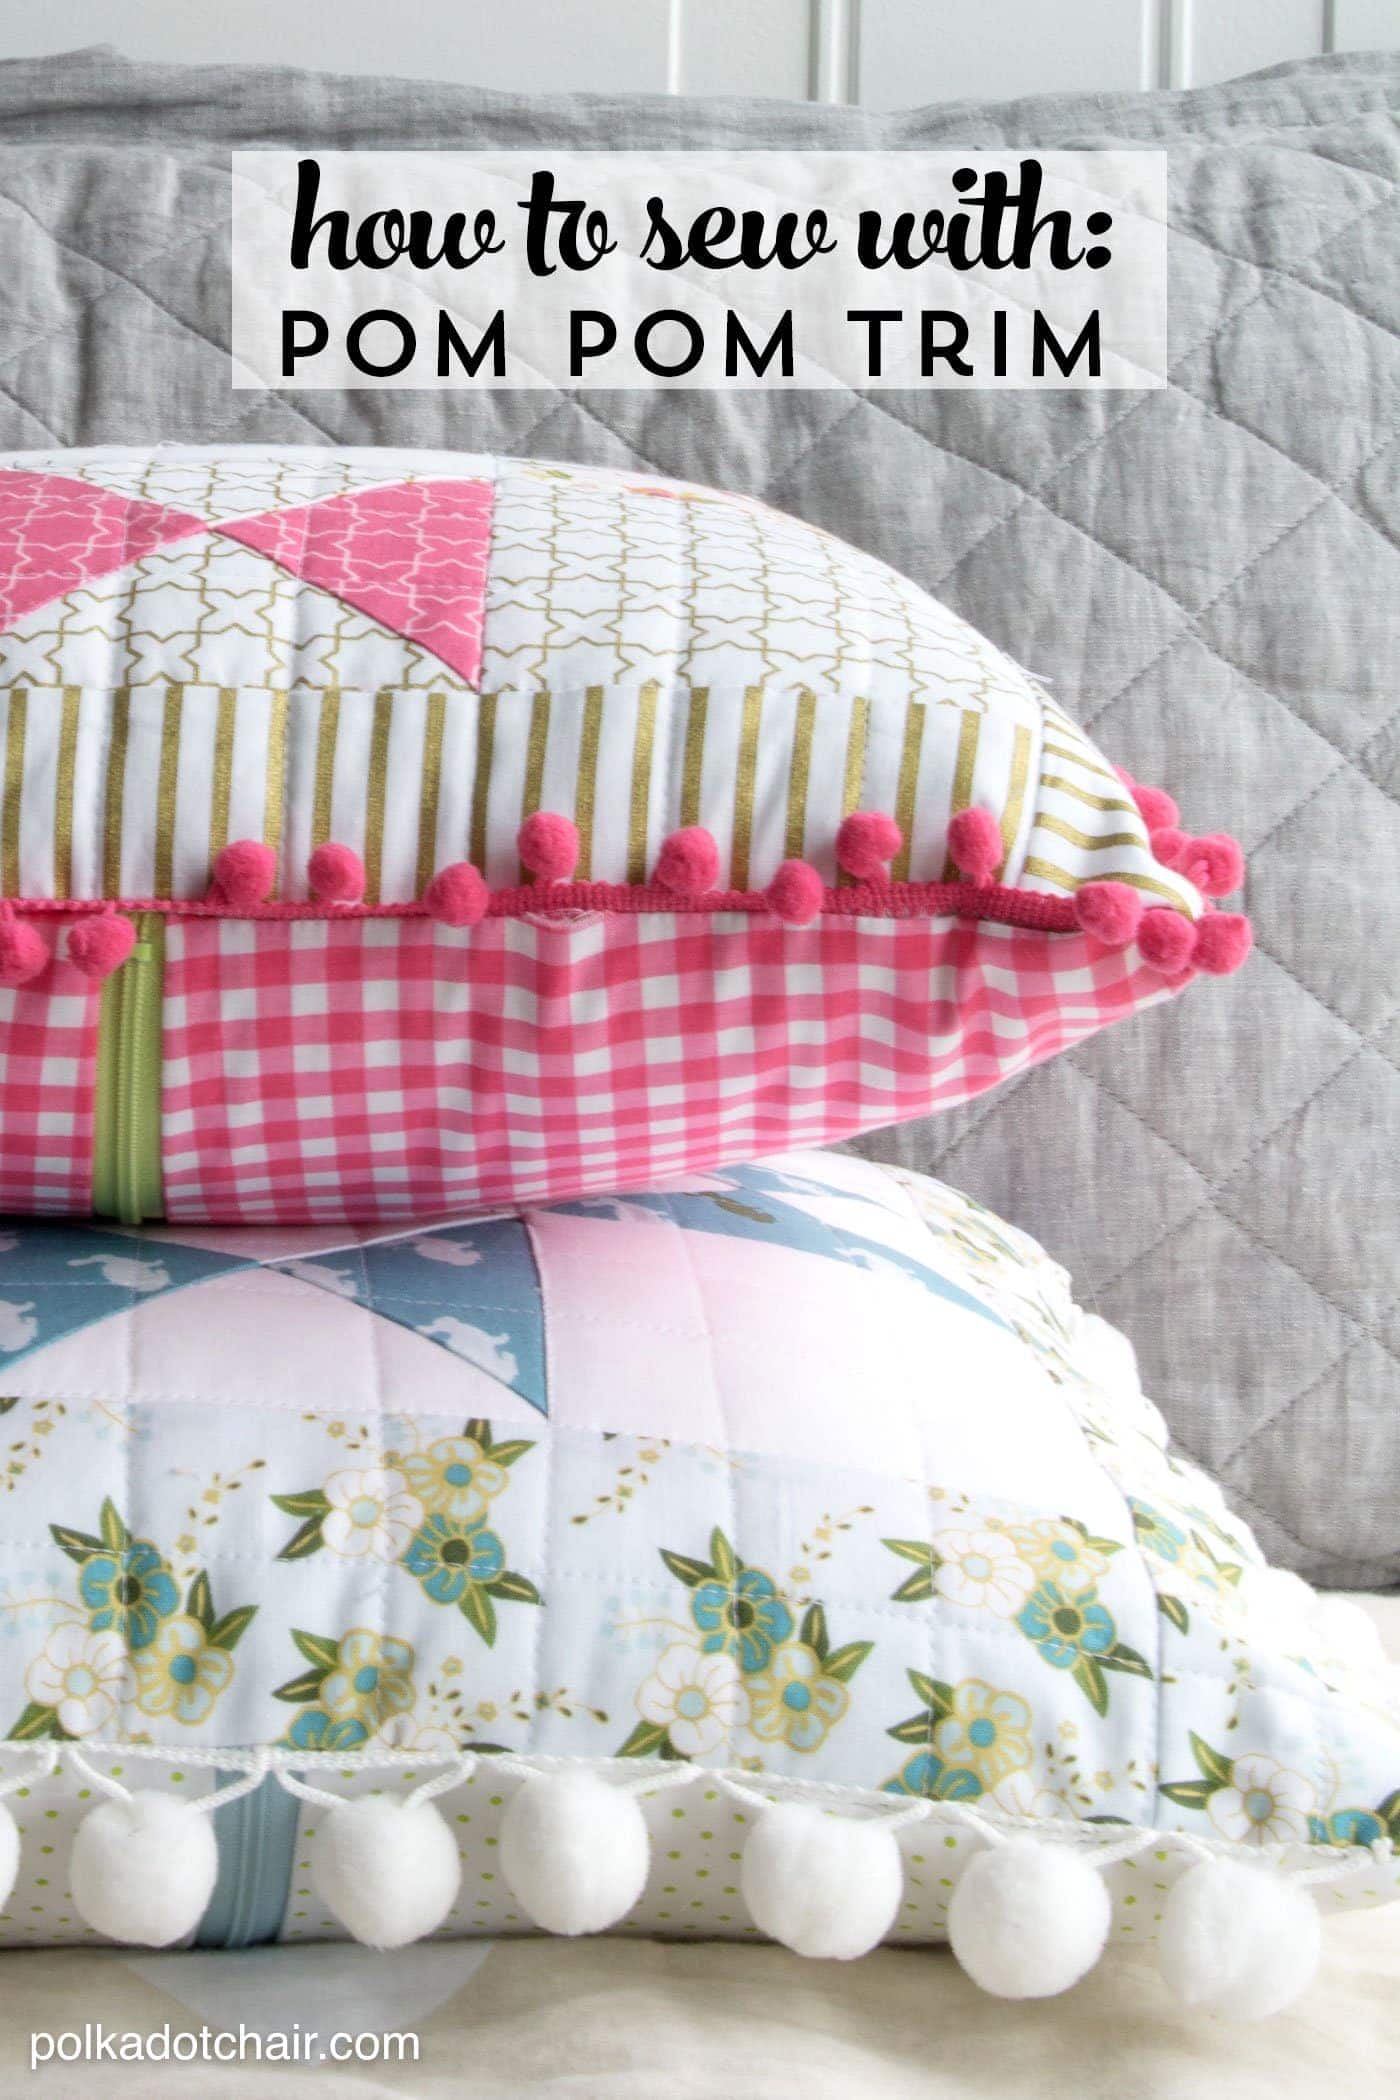 How to Sew Pom Pom Trim - The Polka Dot Chair